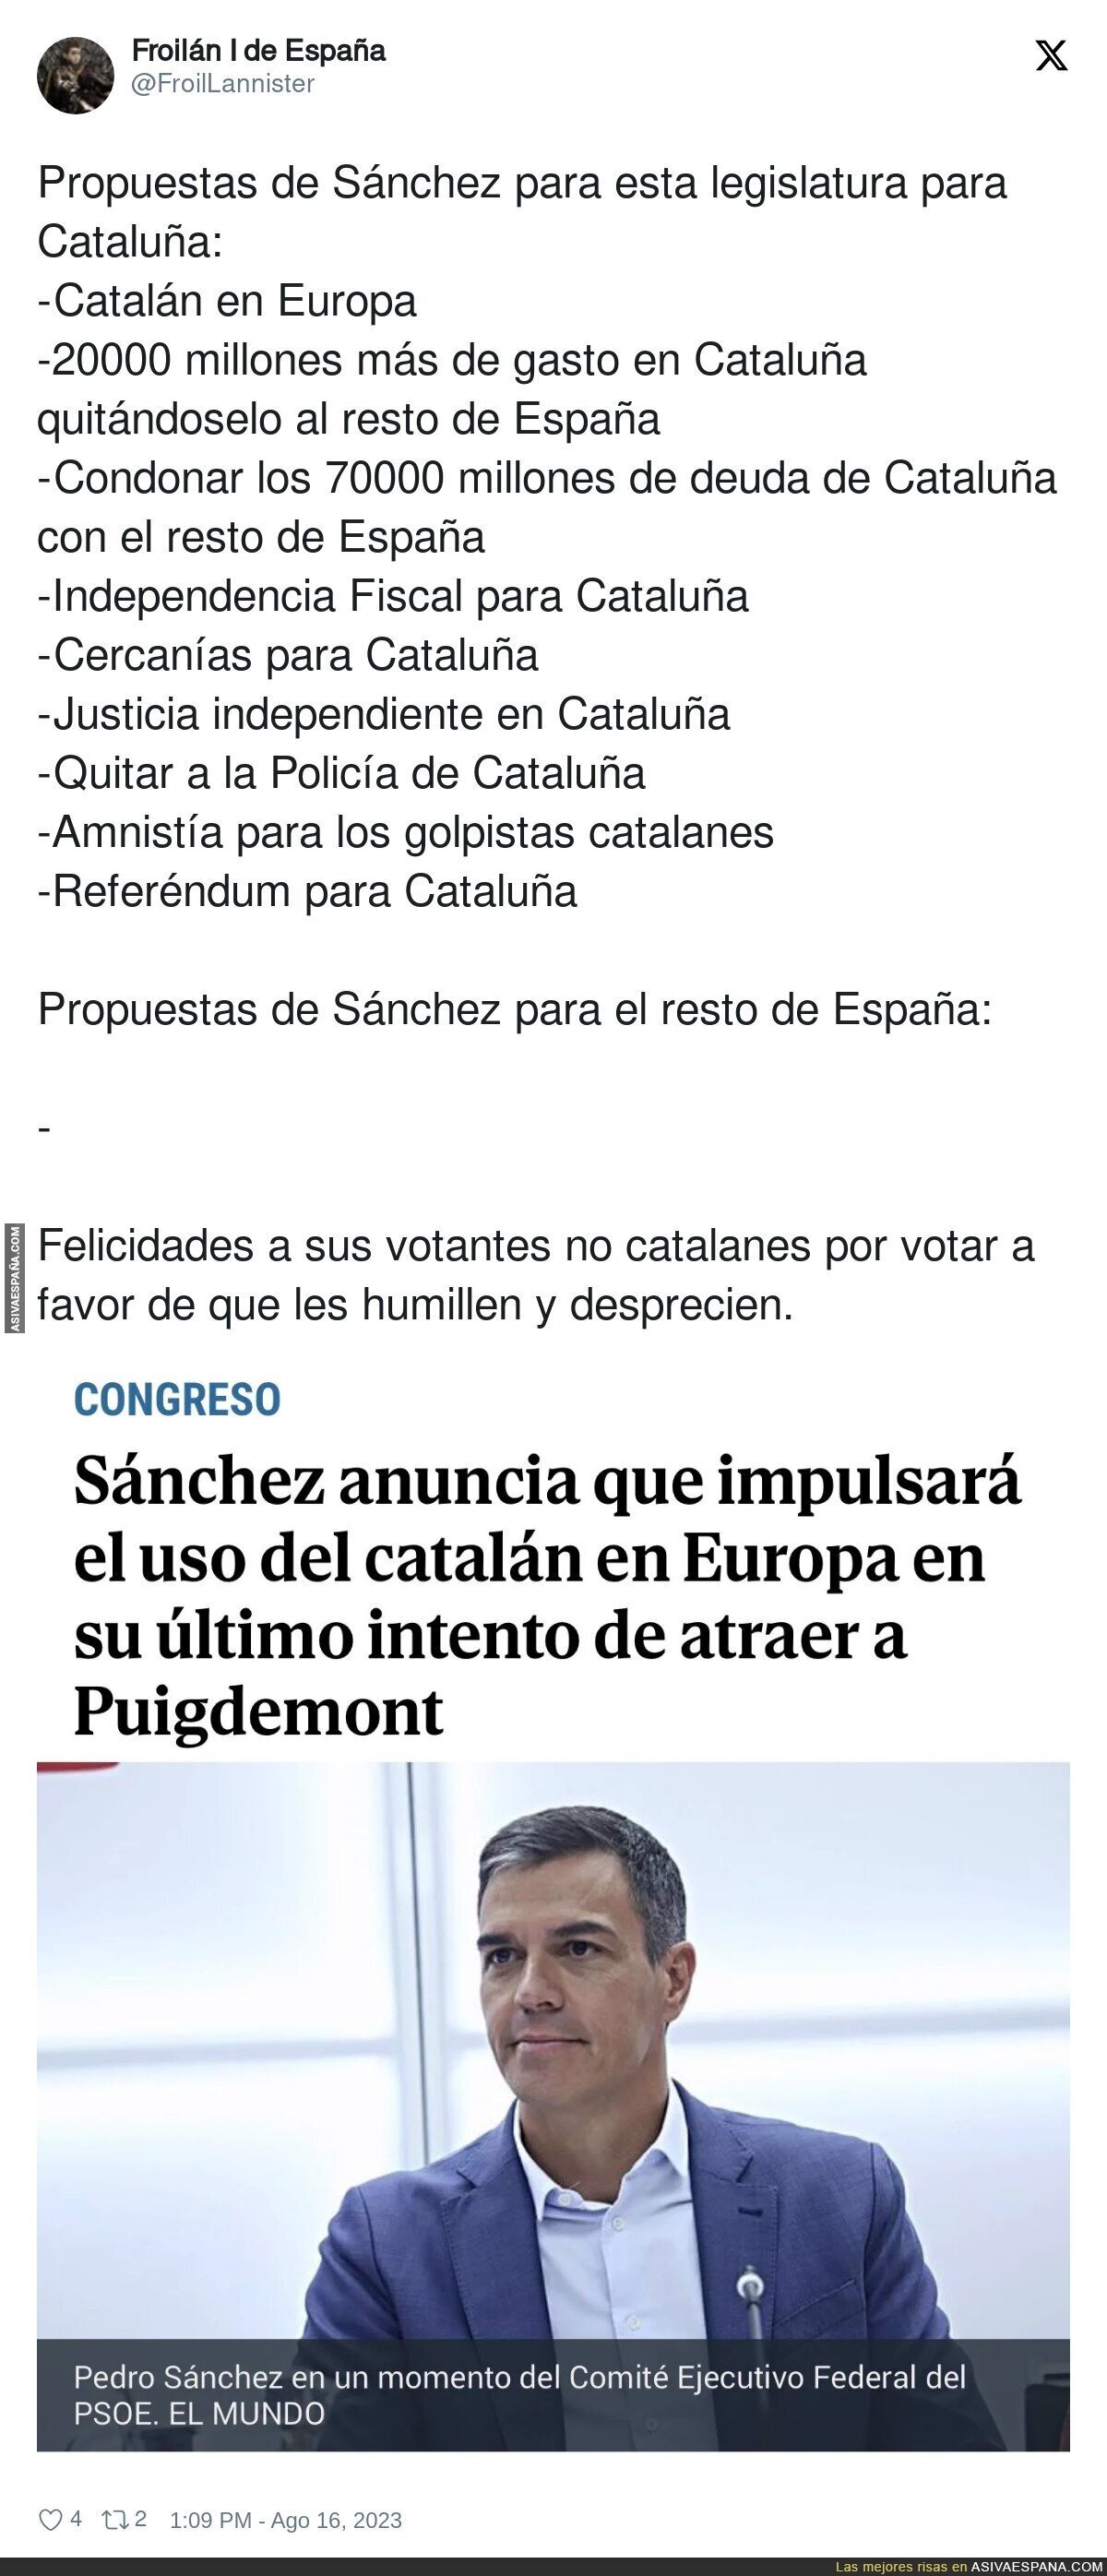 Propuestas de Sánchez para esta legislatura para Cataluña